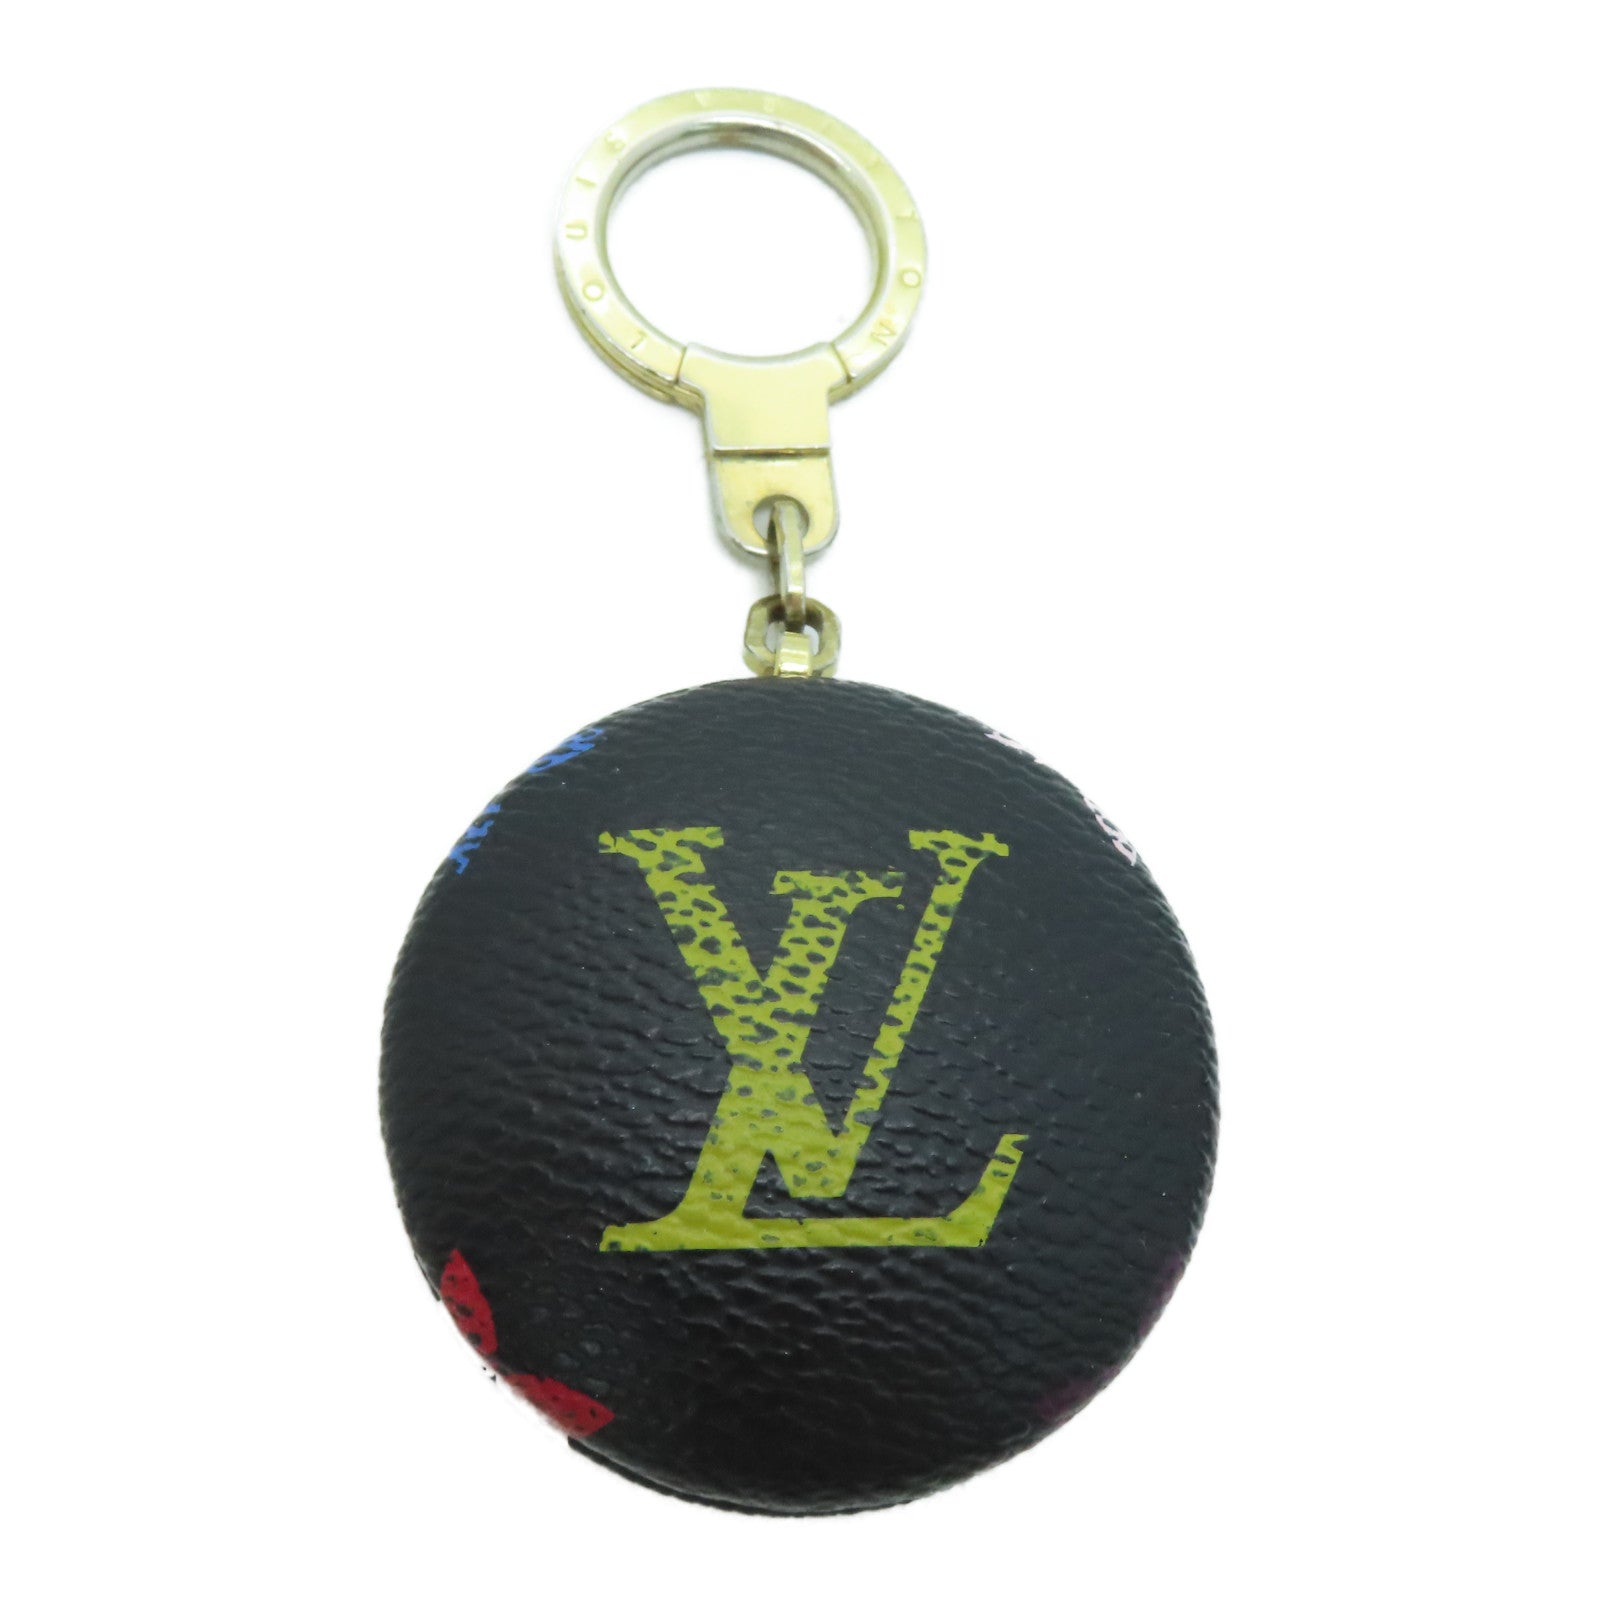 LOUIS VUITTON Monogram Multicolore Key Holder Keychain / Ornament Black /  Color